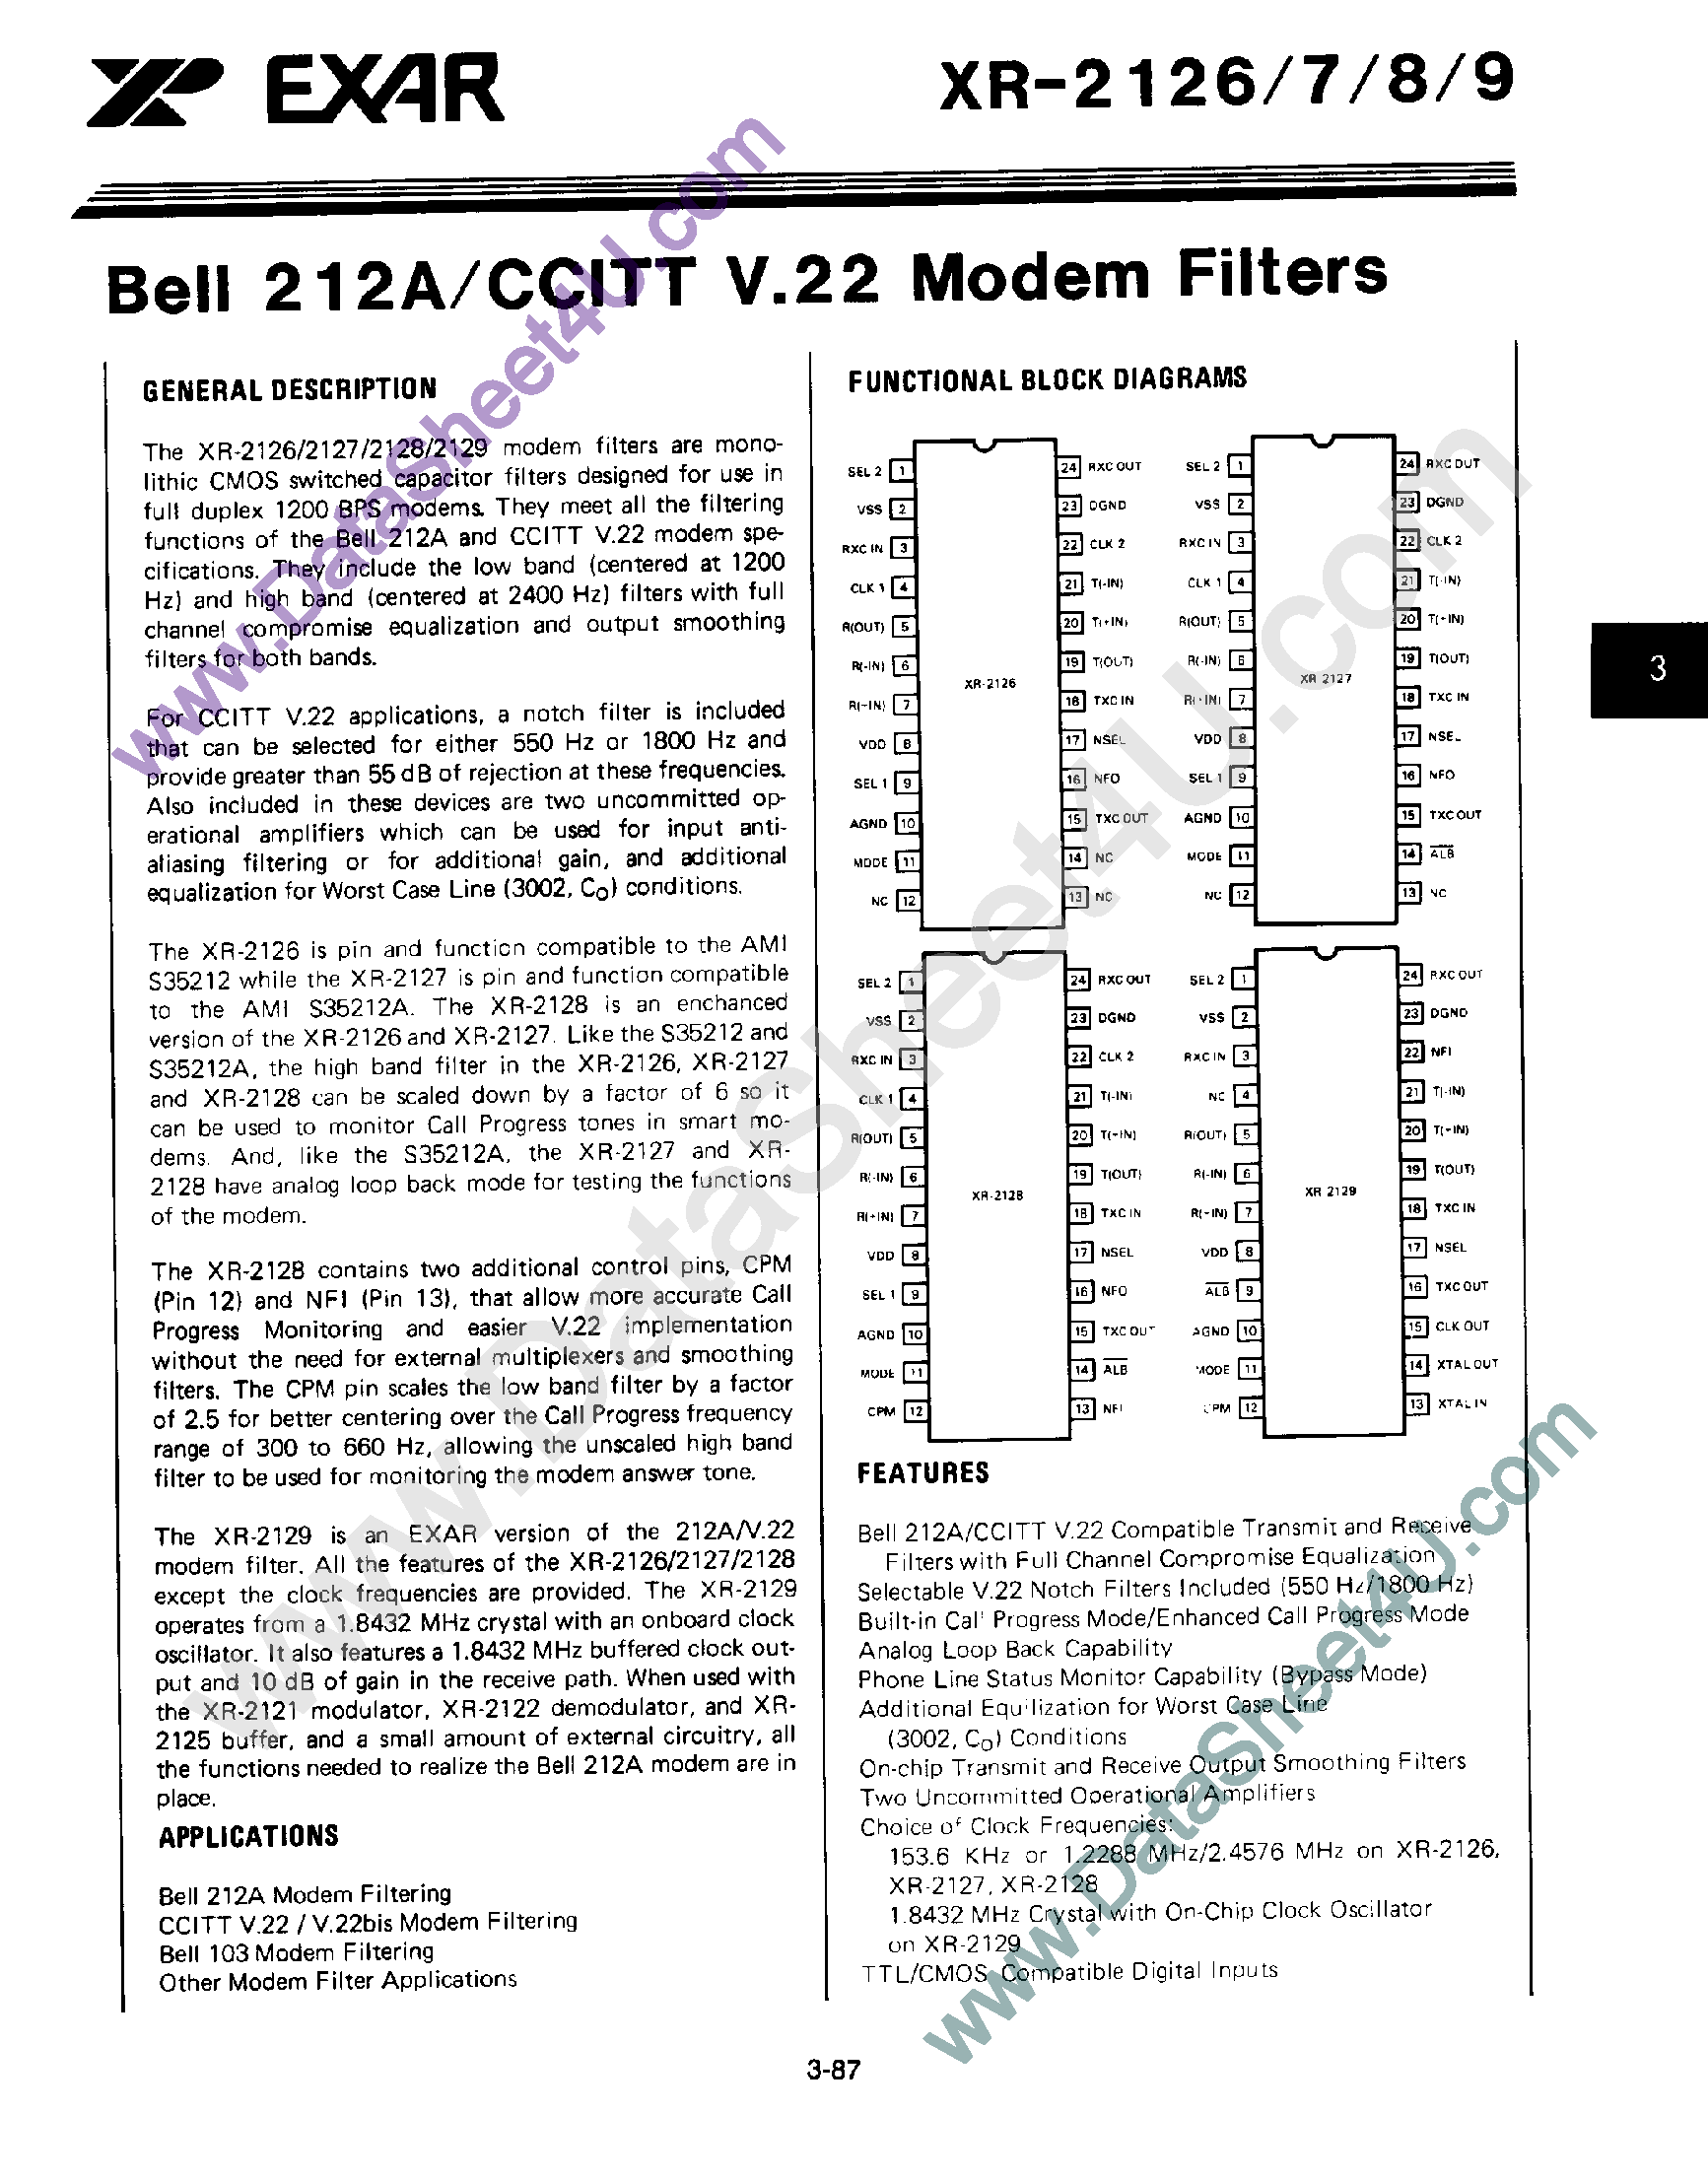 Даташит XR2127 - Bell 212A / CCITT V.22 Modem Filters страница 1